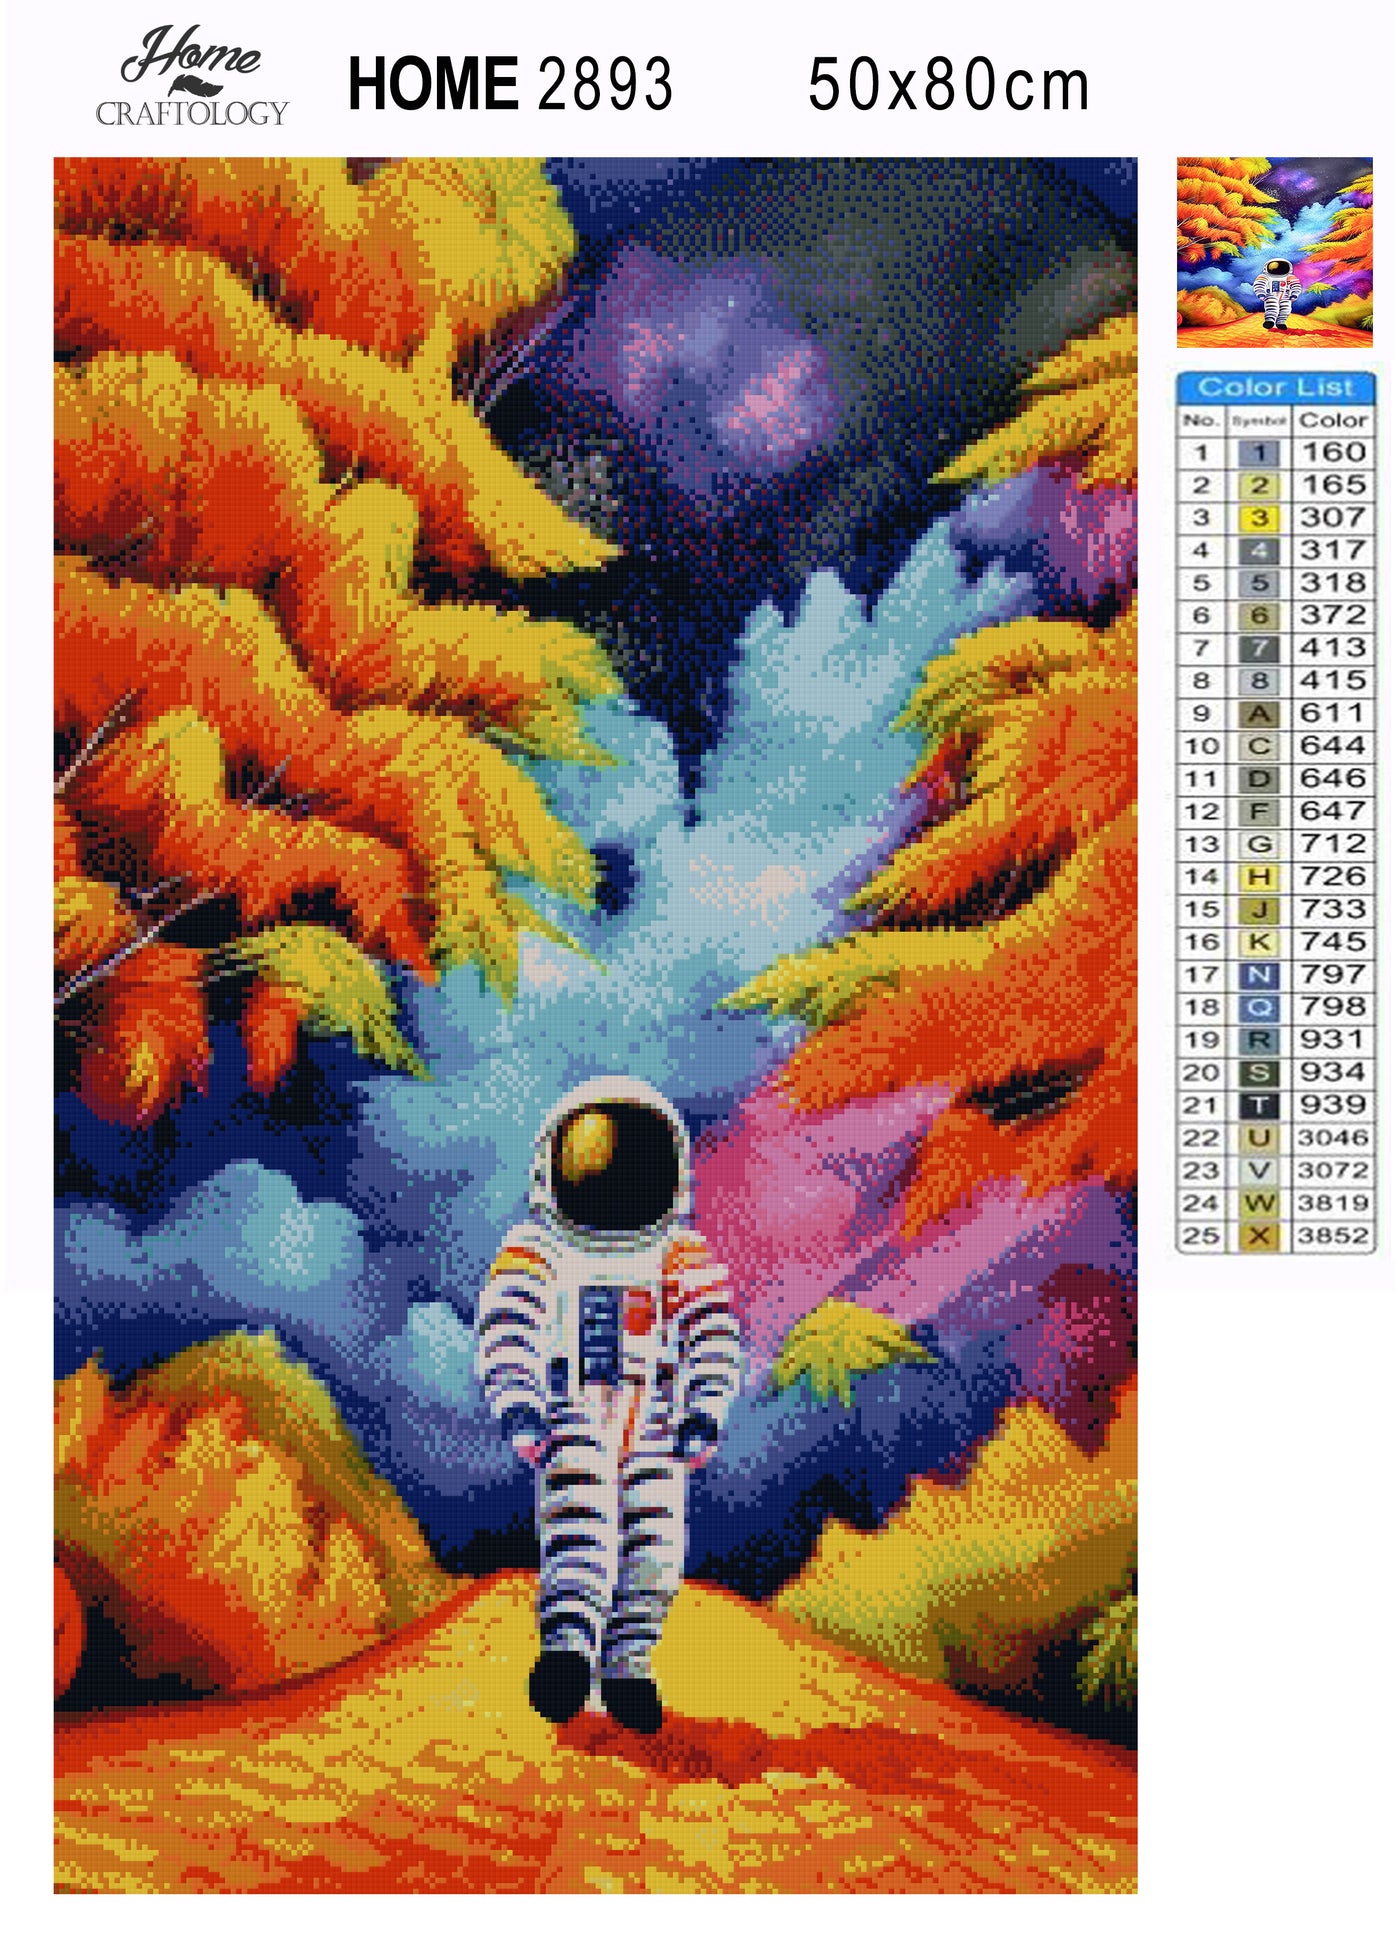 Astronaut in Autumn - Premium Diamond Painting Kit